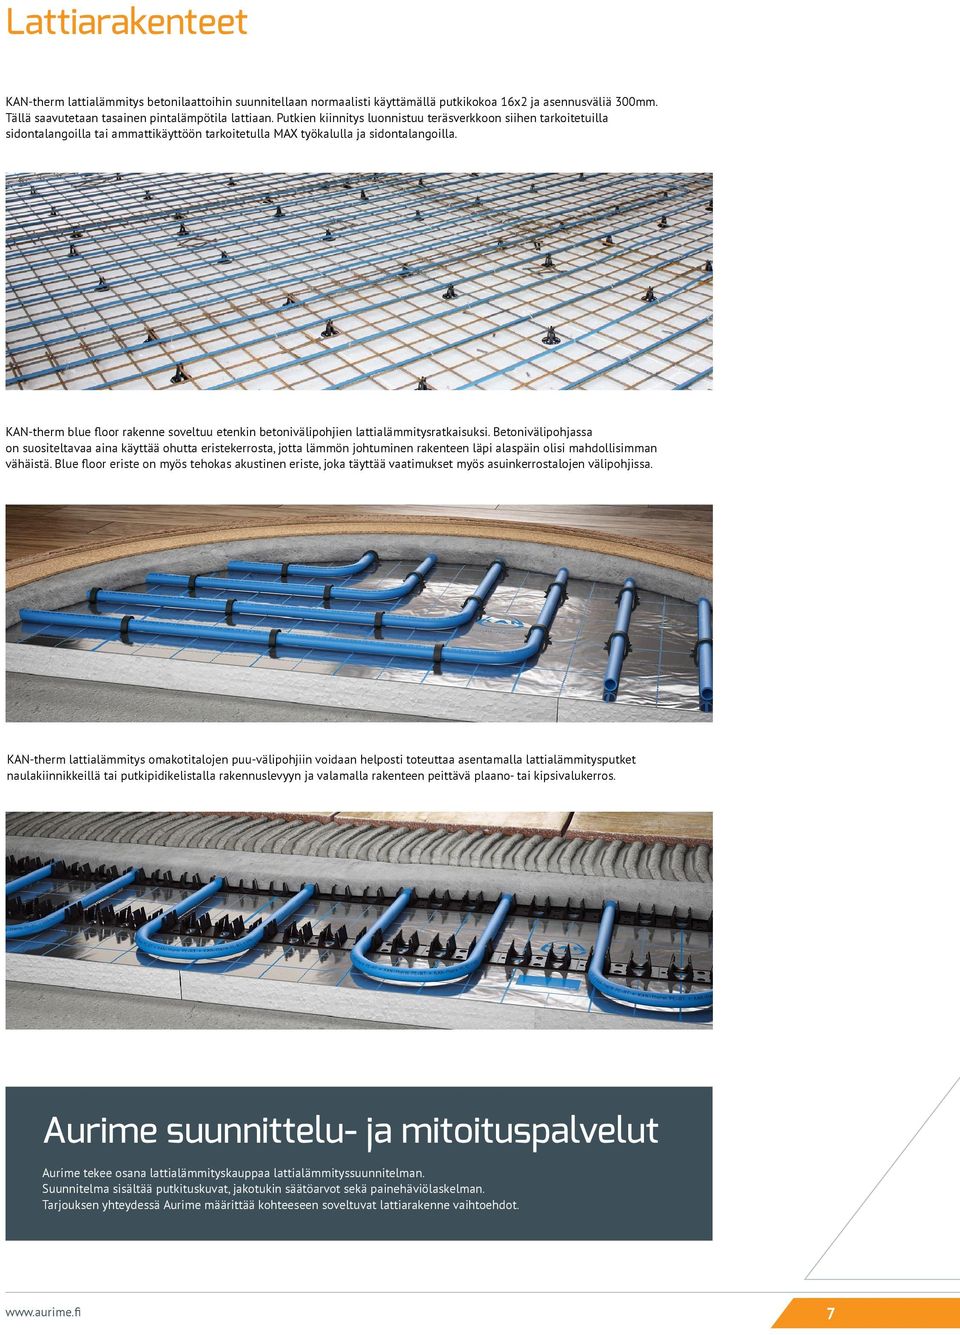 KAN-therm blue floor rakenne soveltuu etenkin betonivälipohjien lattialämmitysratkaisuksi.